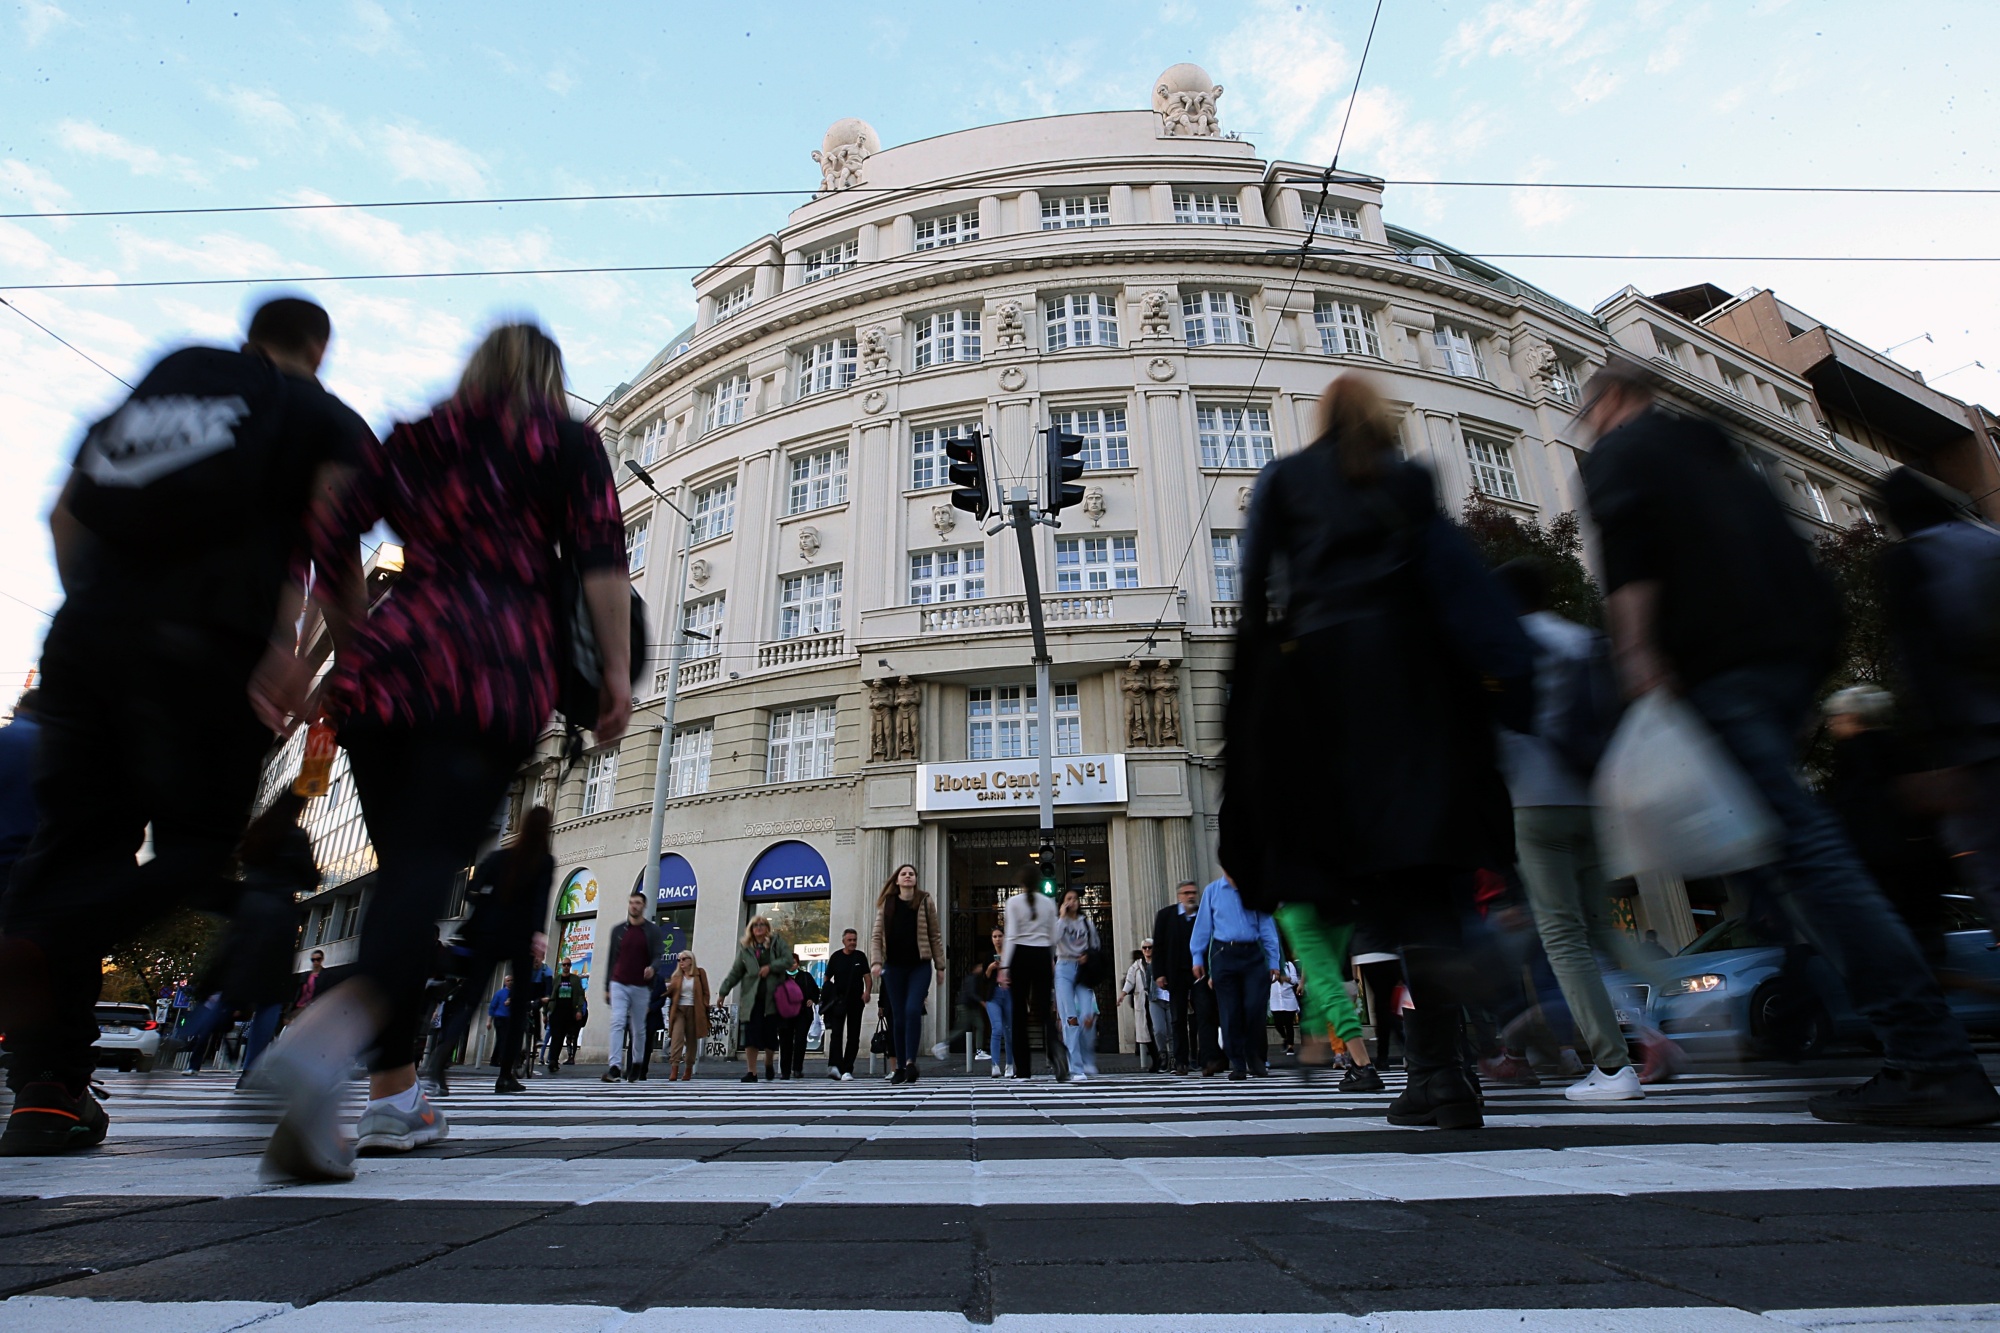 Rusi u Srbiji osnovali 2.321 kompaniju ljudi prelaze preko pješačkog prelaza slika napravljena ogozdo u pozadini zgrada na ulici desetak ljudi sunčan dan